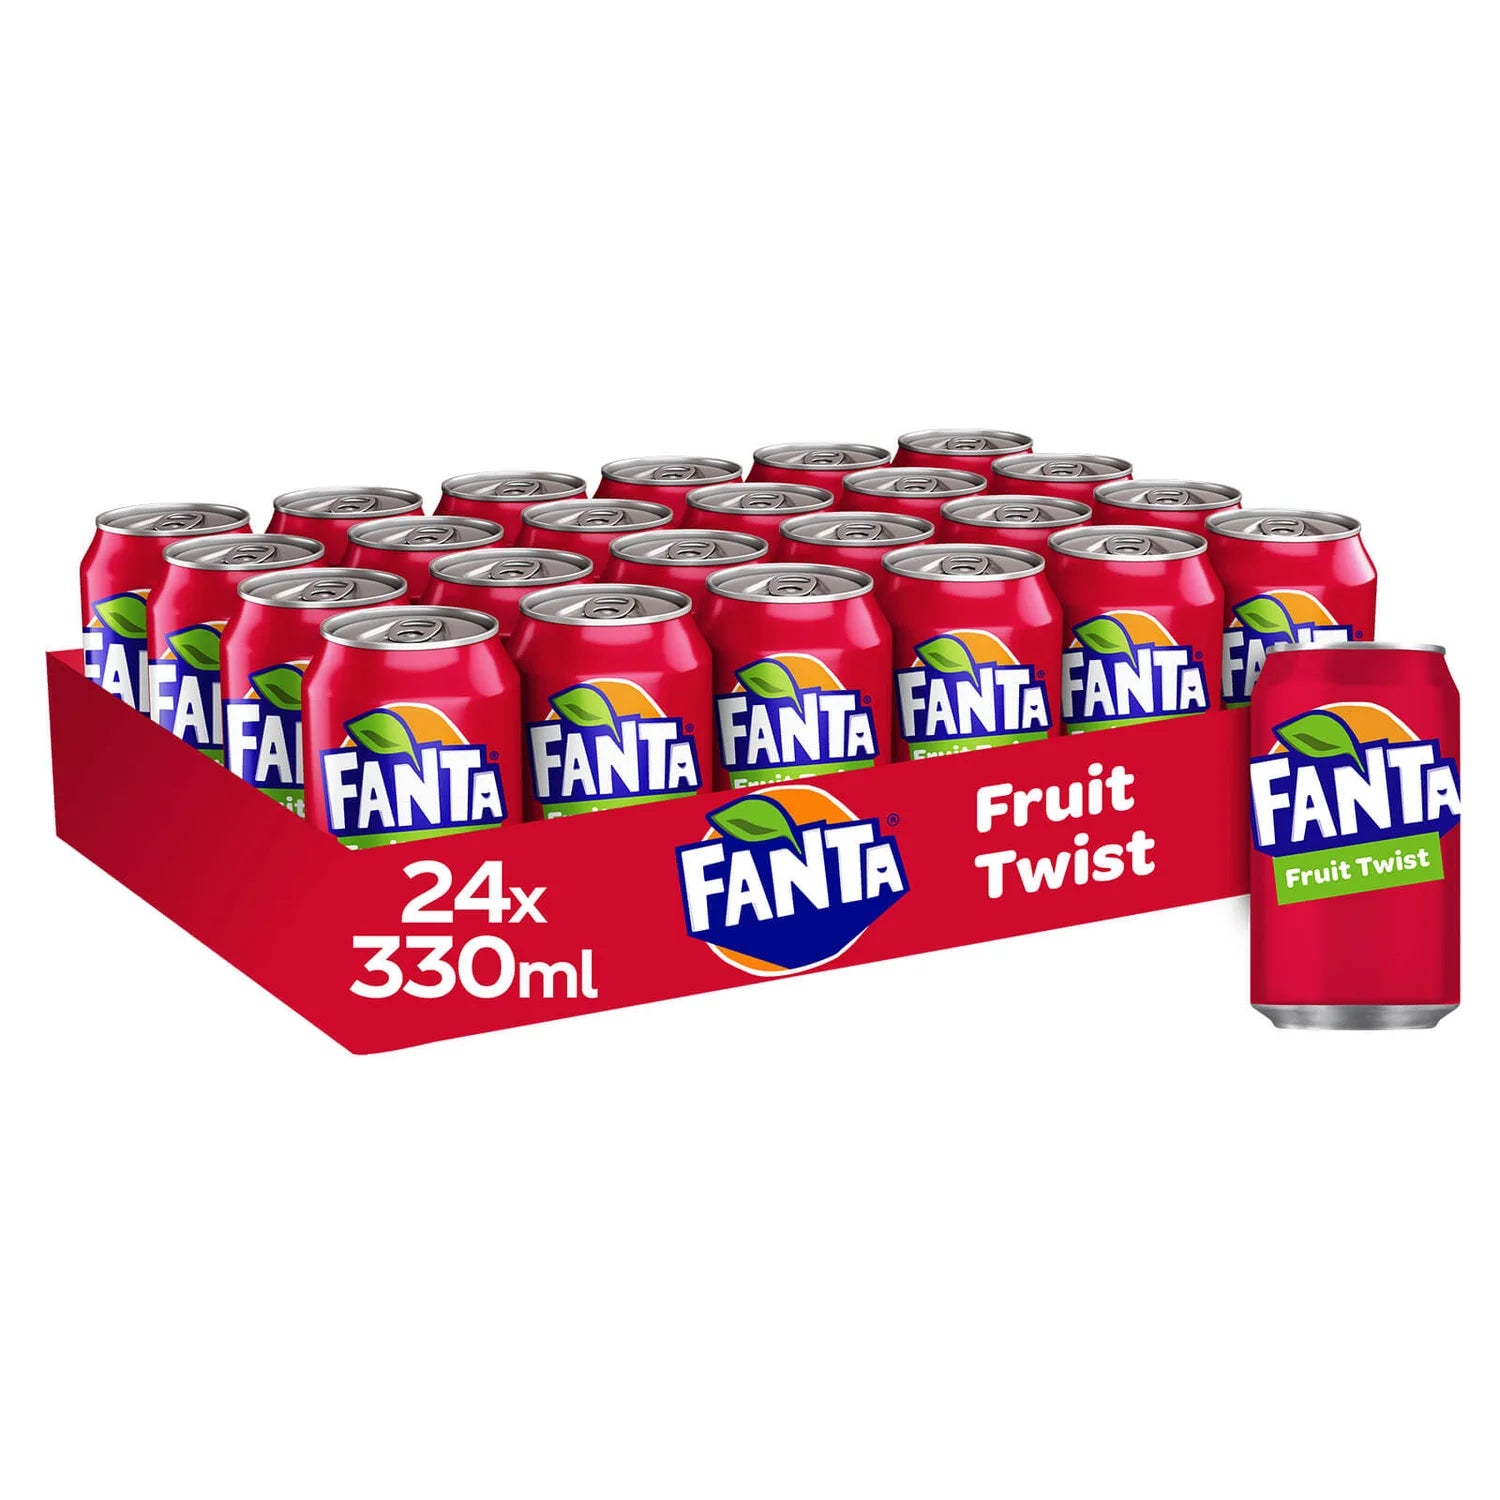 Fanta Fruit Twist - 330ml - case of 24